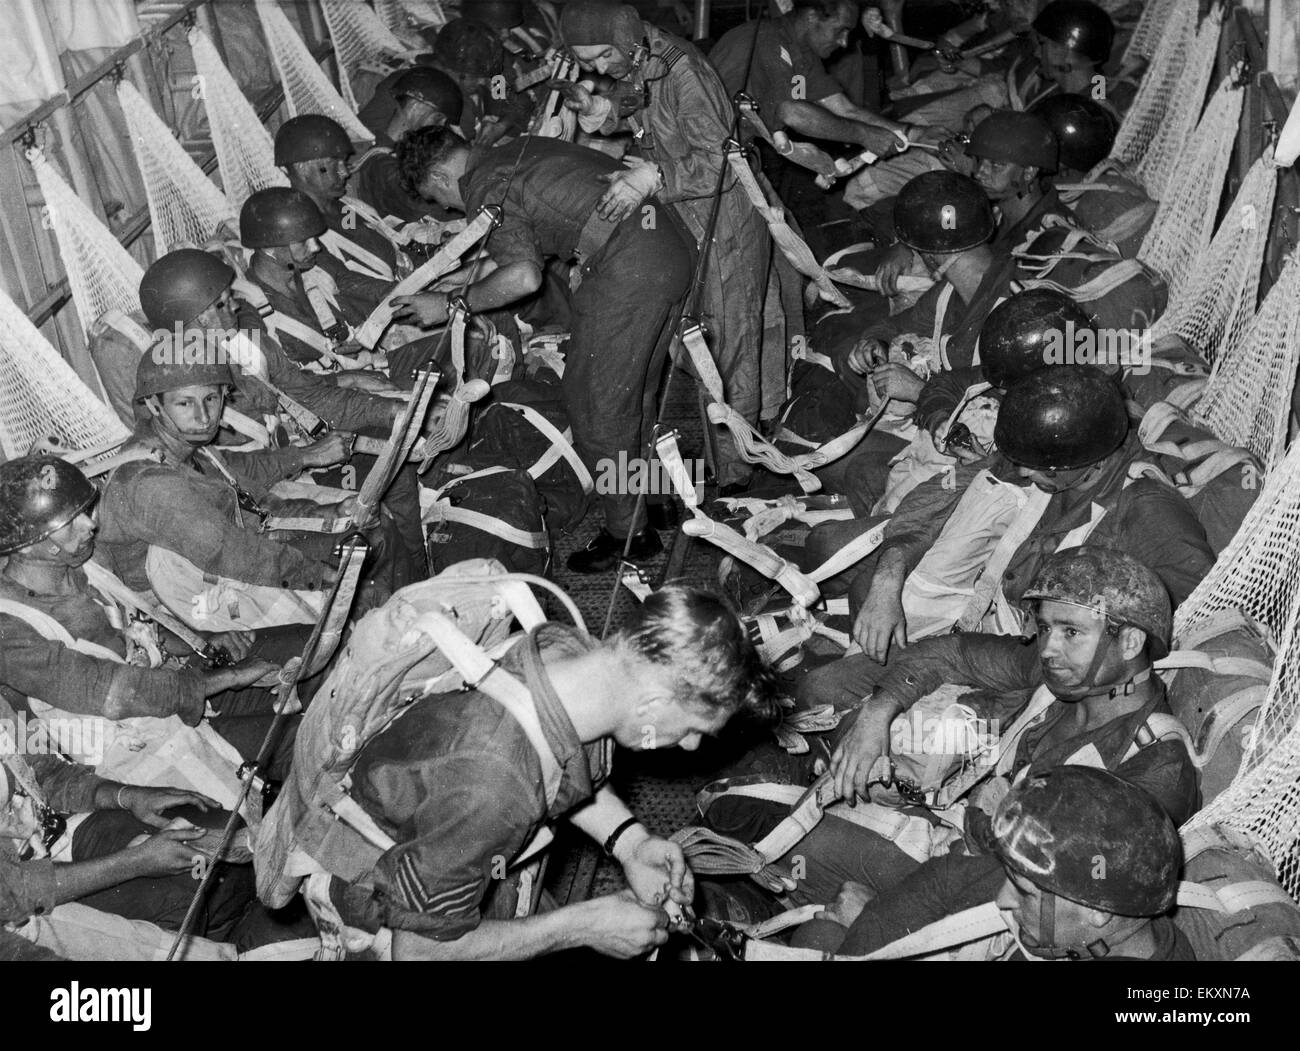 Notfall in Malaya. Die 22. Special Air Service Regiment gesehen hier ruhig sitzen im Flugzeug vor Baum (eine Technik des niedrigen Niveau Fallschirmspringen) an die kommunistischen Aufständischen im malaiischen Dschungel Fallschirmspringen. 29. Oktober 1959 Stockfoto